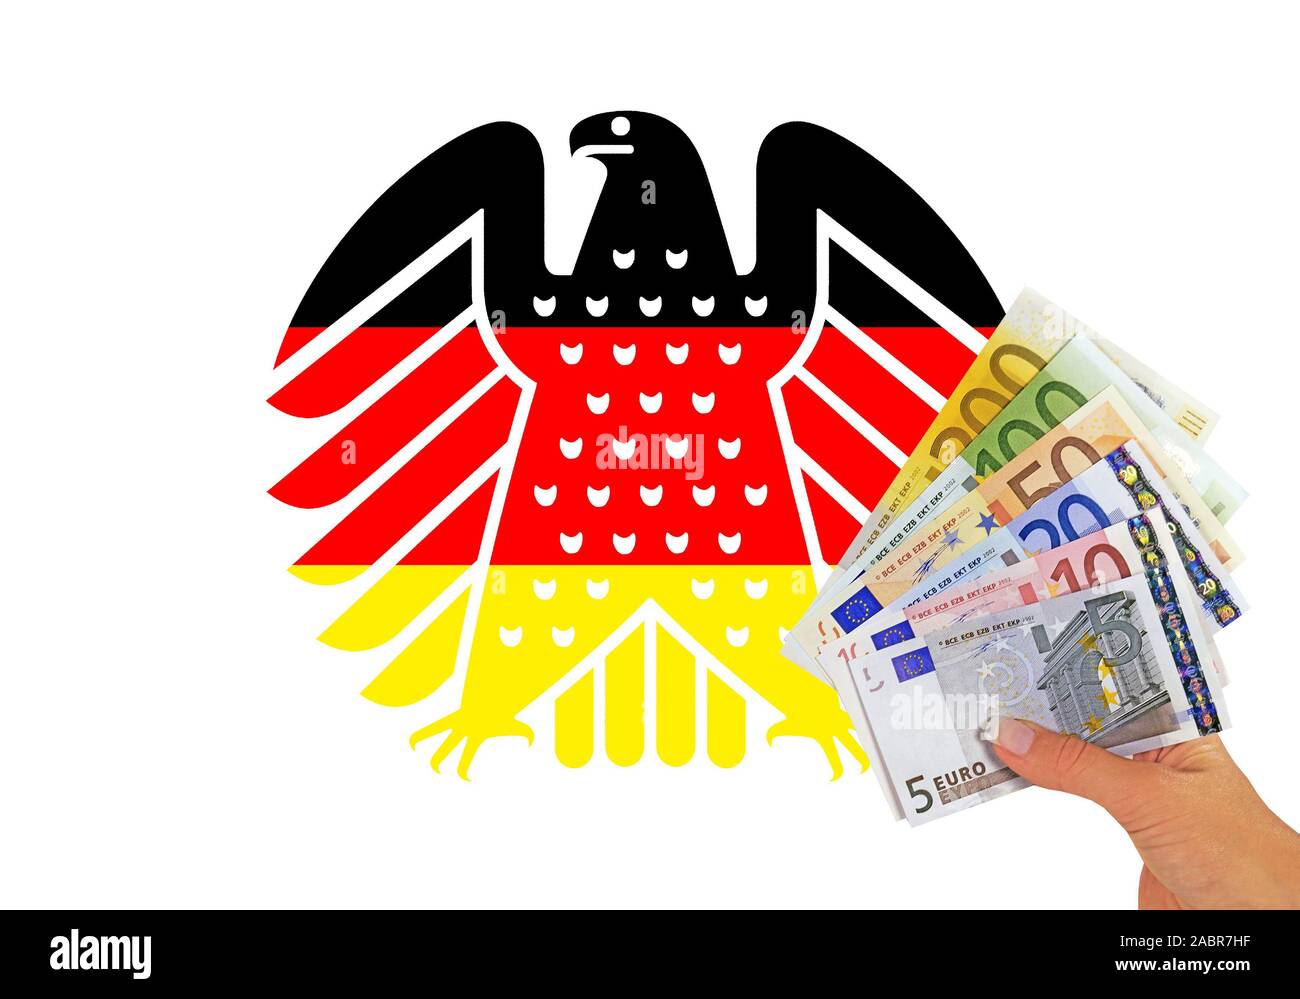 Neuer Bundesadler in den Farben schwarz-rot-gold, Wappentier der Bundesrepublik Deutschland, davor Hand mit Banknoten, Stock Photo